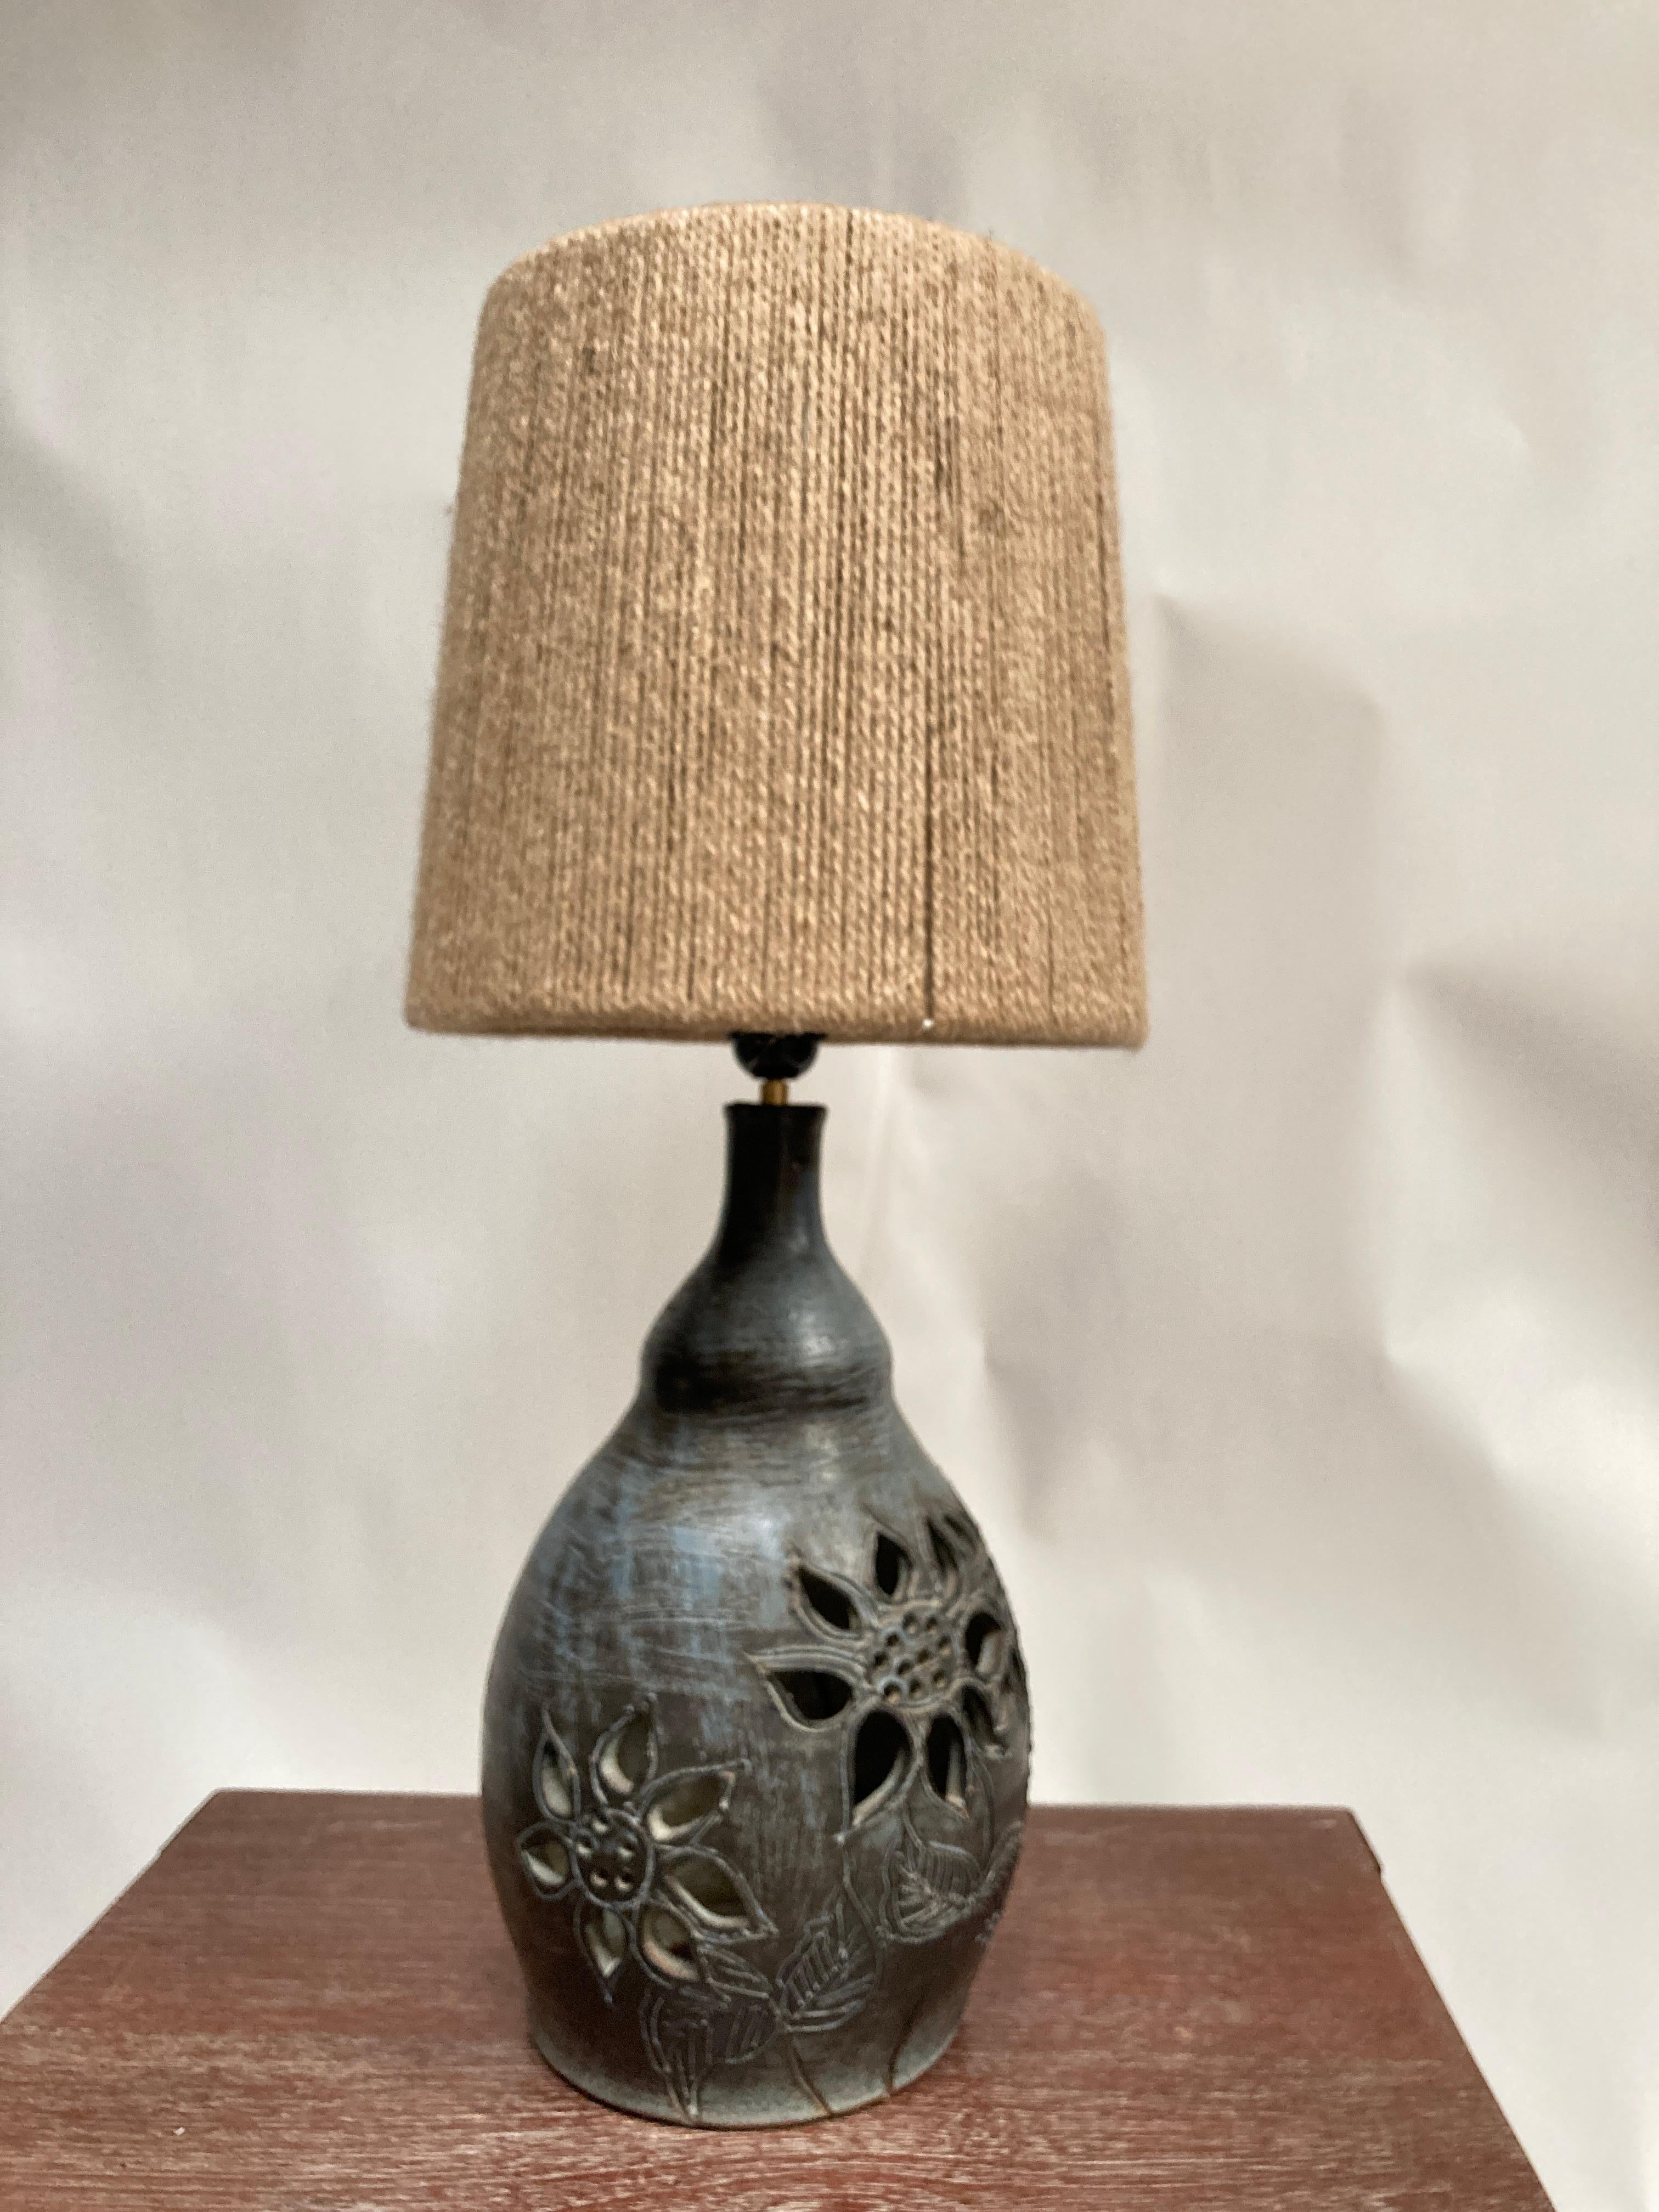 Sehr schön Ein von einer Art Studio Töpferei Keramik Lampe 
Zwei Lichter, eines innen, eines außen
Unterzeichnet, befindet sich
Maße ohne Schirm angegeben
Kein Schatten enthalten